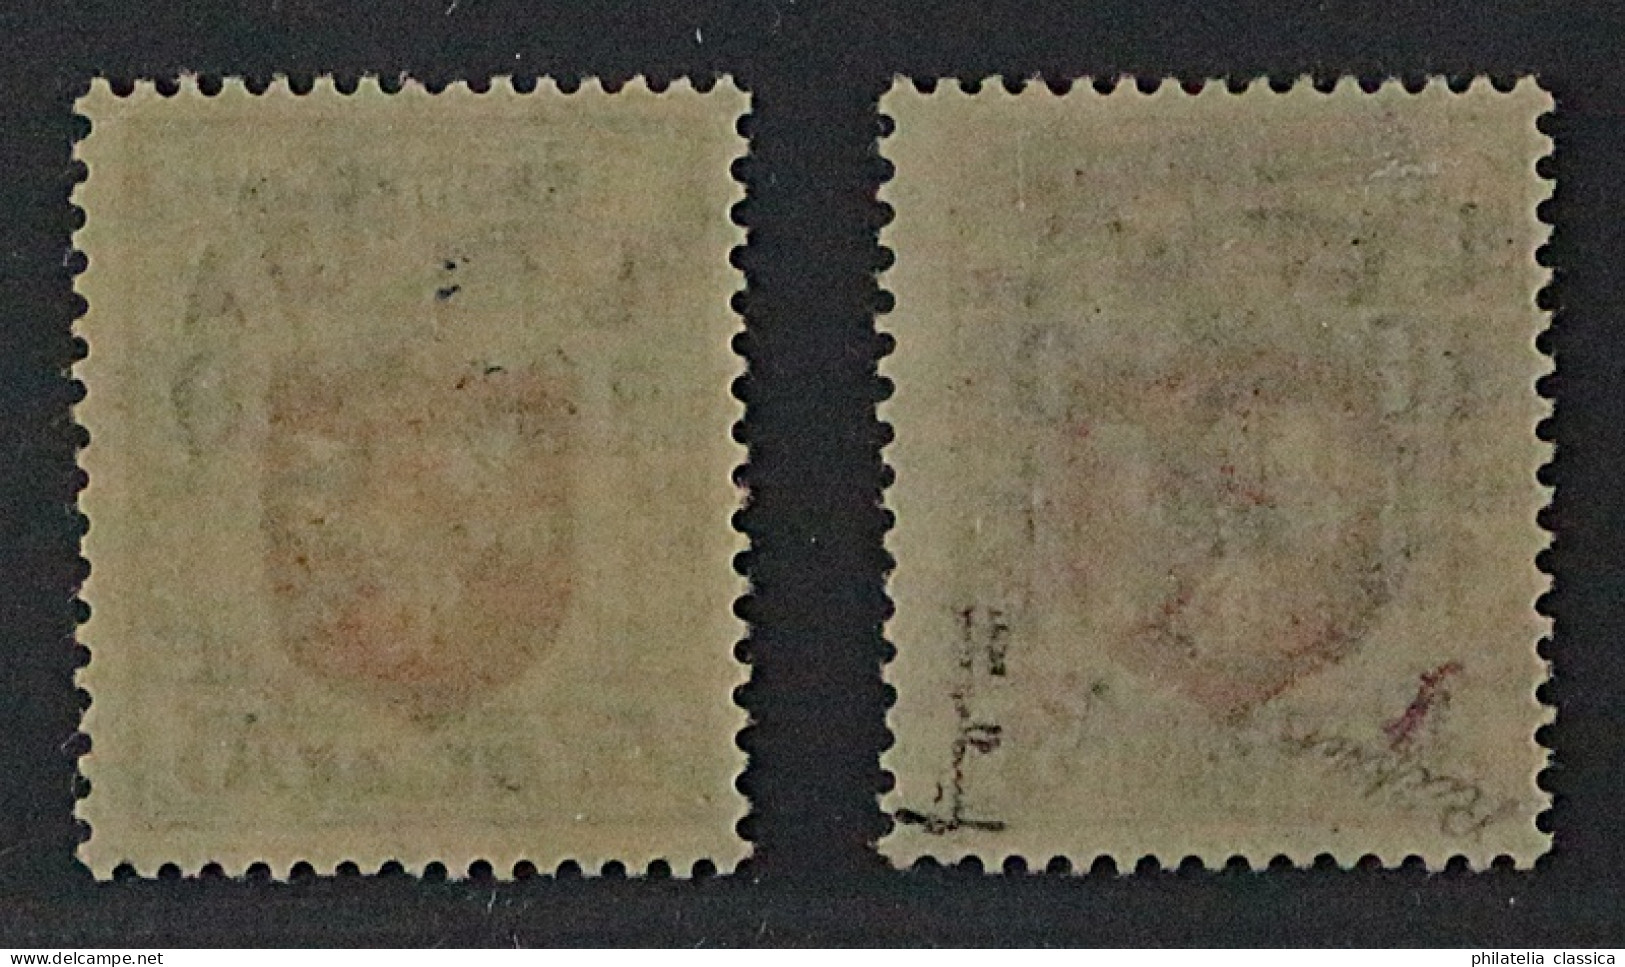 Mittellitauen 12-13 **/* Wappen Spitzenwerte, Auflage 283, Fotoattest KW 6000,-€ - Lituanie